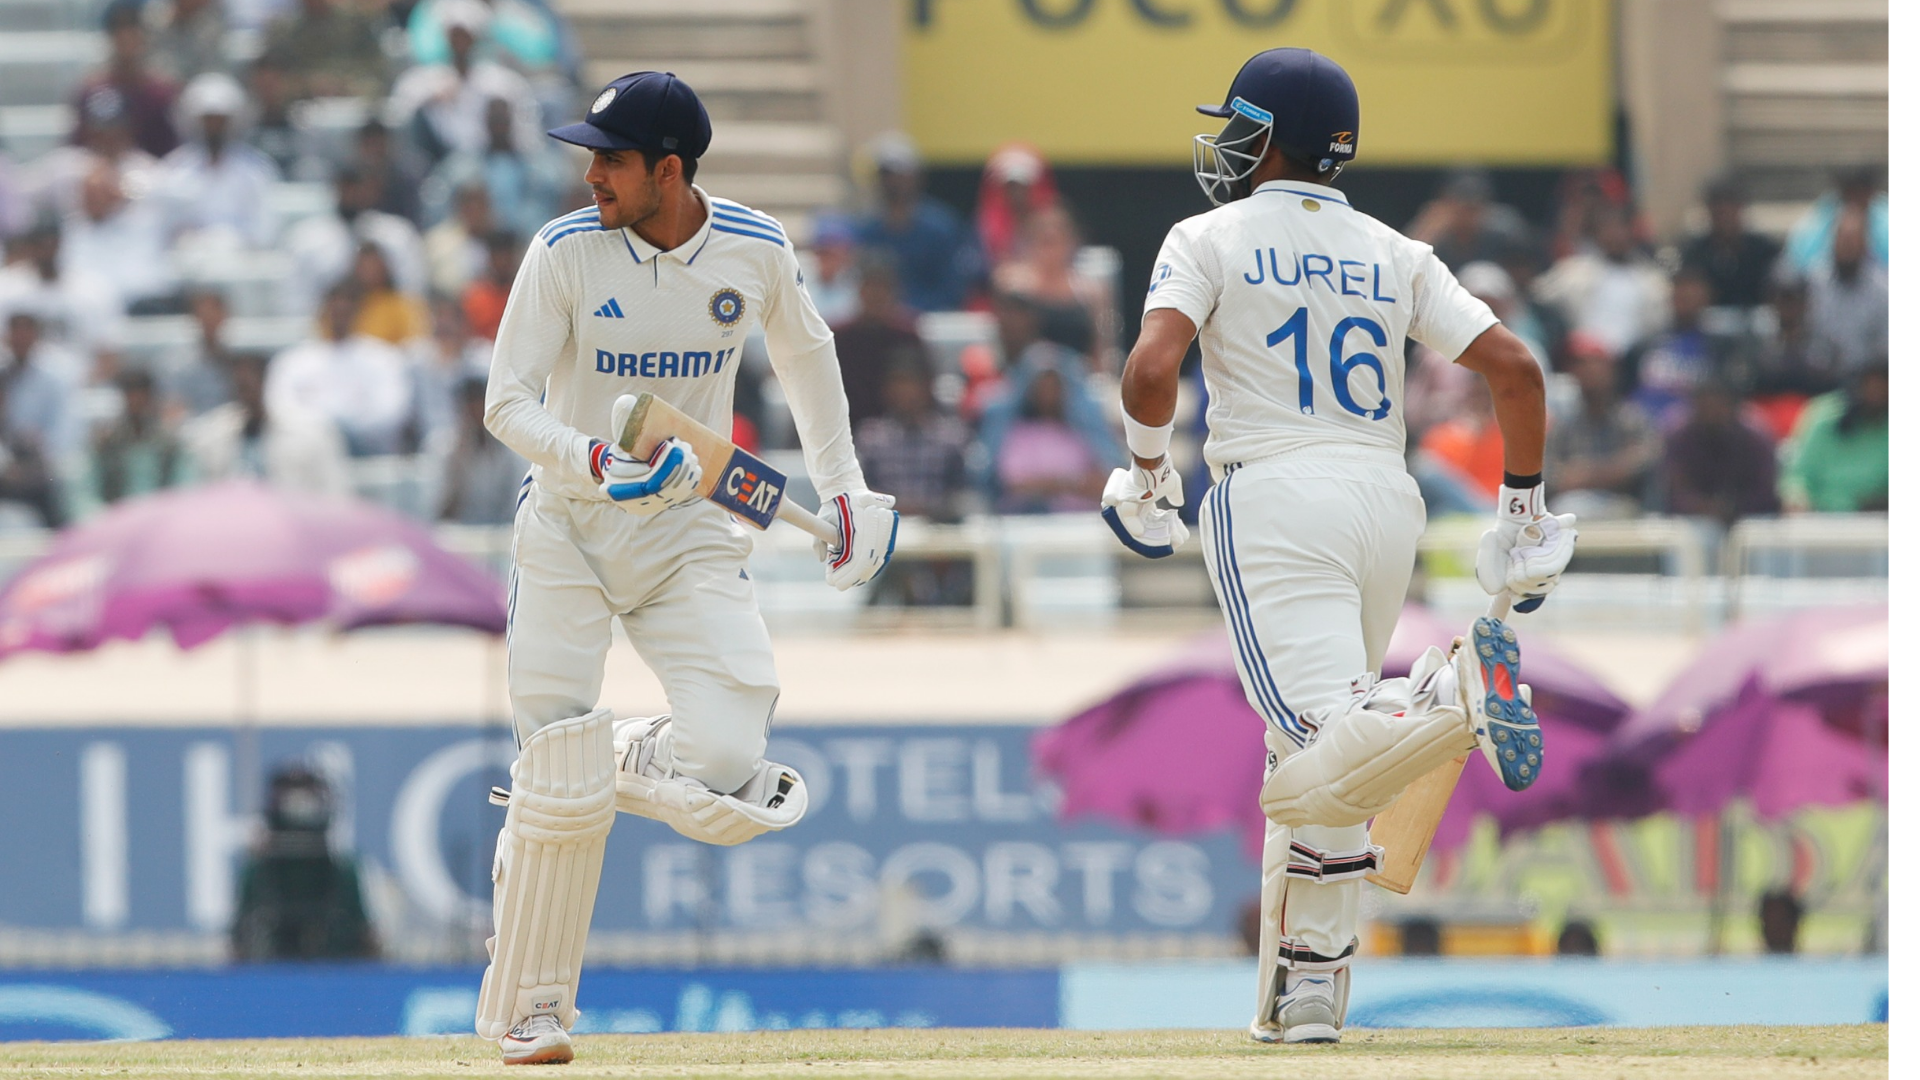 IND vs ENG Ranchi Test: ध्रुव जुरेल, शुबमन गिल ने भारत को इंग्लैंड के खिलाफ टेस्ट सीरीज जिताया